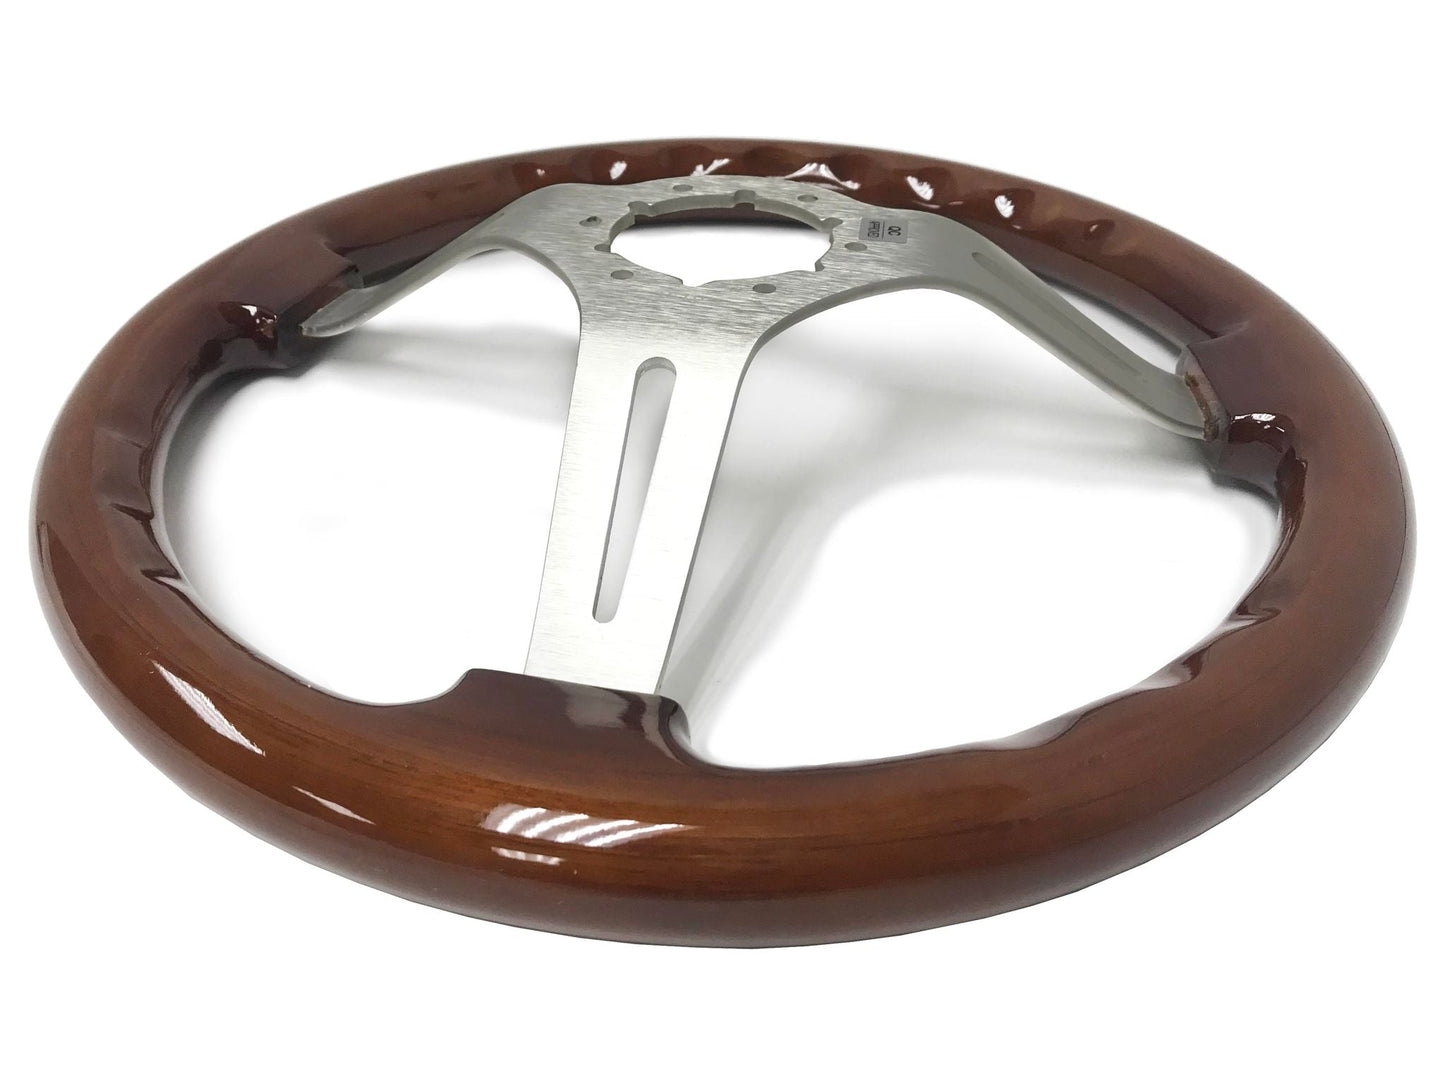 1967-68 Buick Steering Wheel Kit | Mahogany Wood | ST3027S